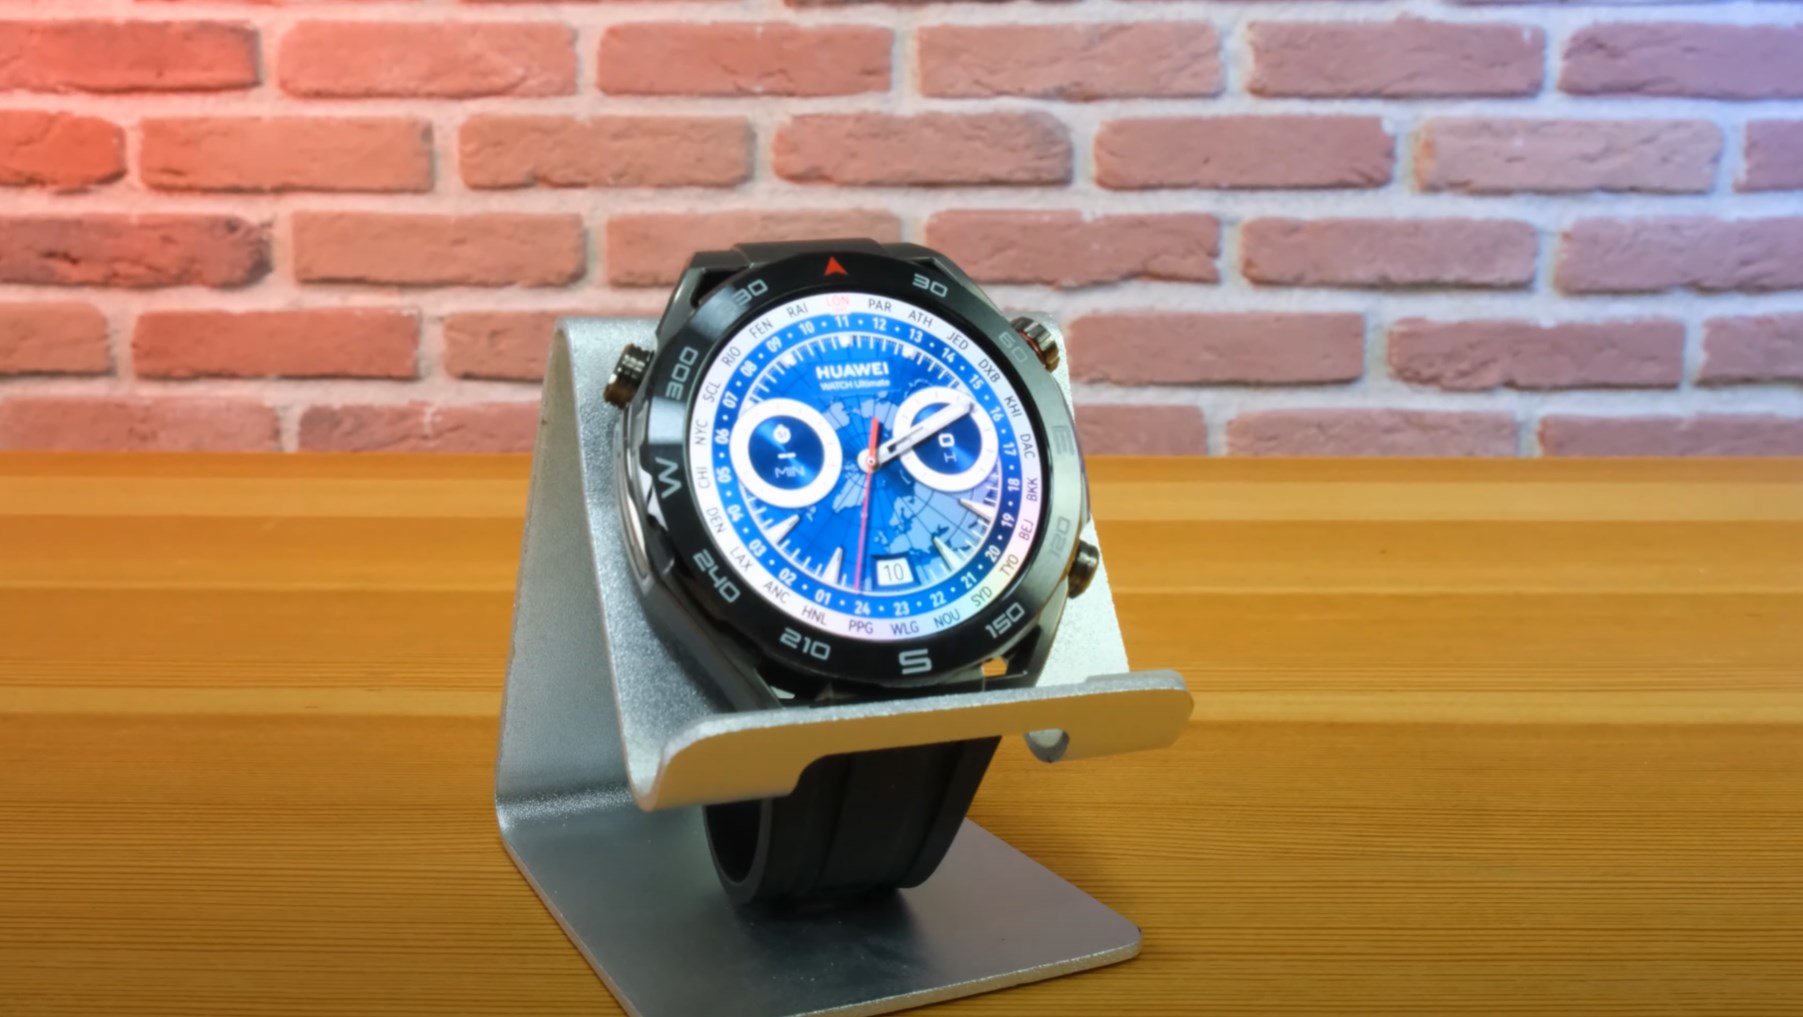 Bu akıllı saat bir başka! Huawei Watch Ultimate incelemesi